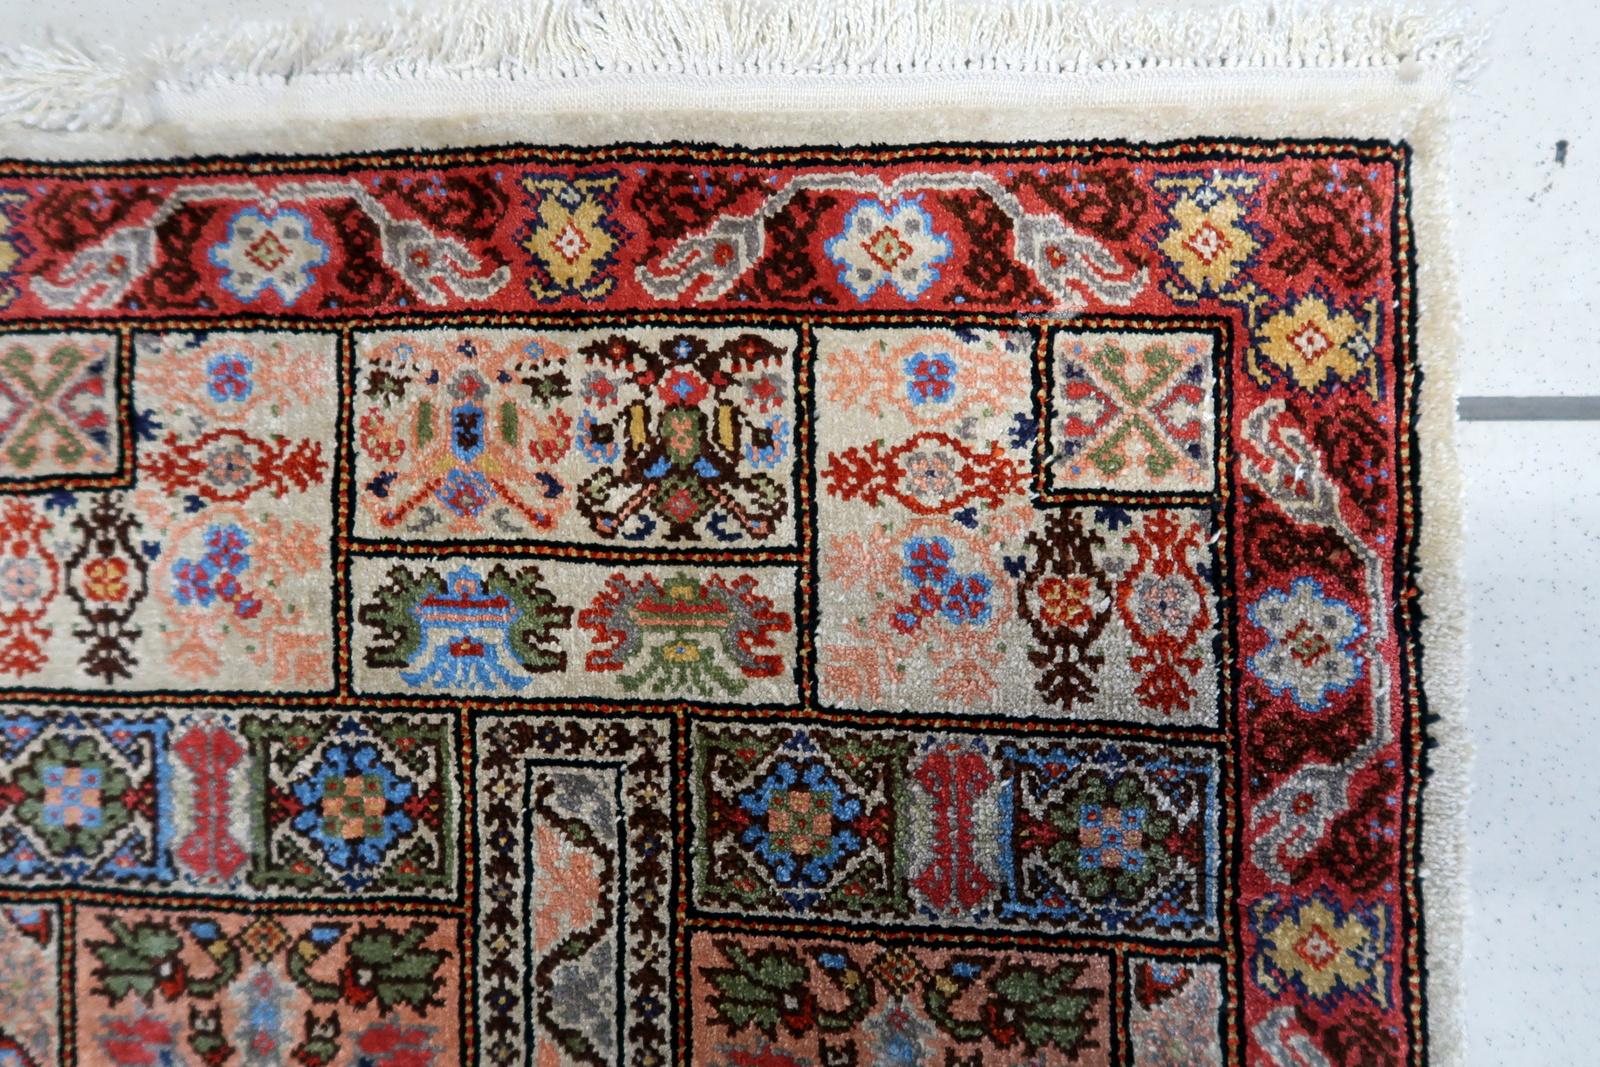 Handgefertigter Vintage-Teppich aus tunesischer Seide aus den 1970er Jahren. Dieses prächtige Kunstwerk misst 1,6 mal 3,7 Fuß und strahlt zeitlose Eleganz aus.

Beschreibung des Produkts:
Design/One Patterns:
Der Teppich zeigt eine harmonische